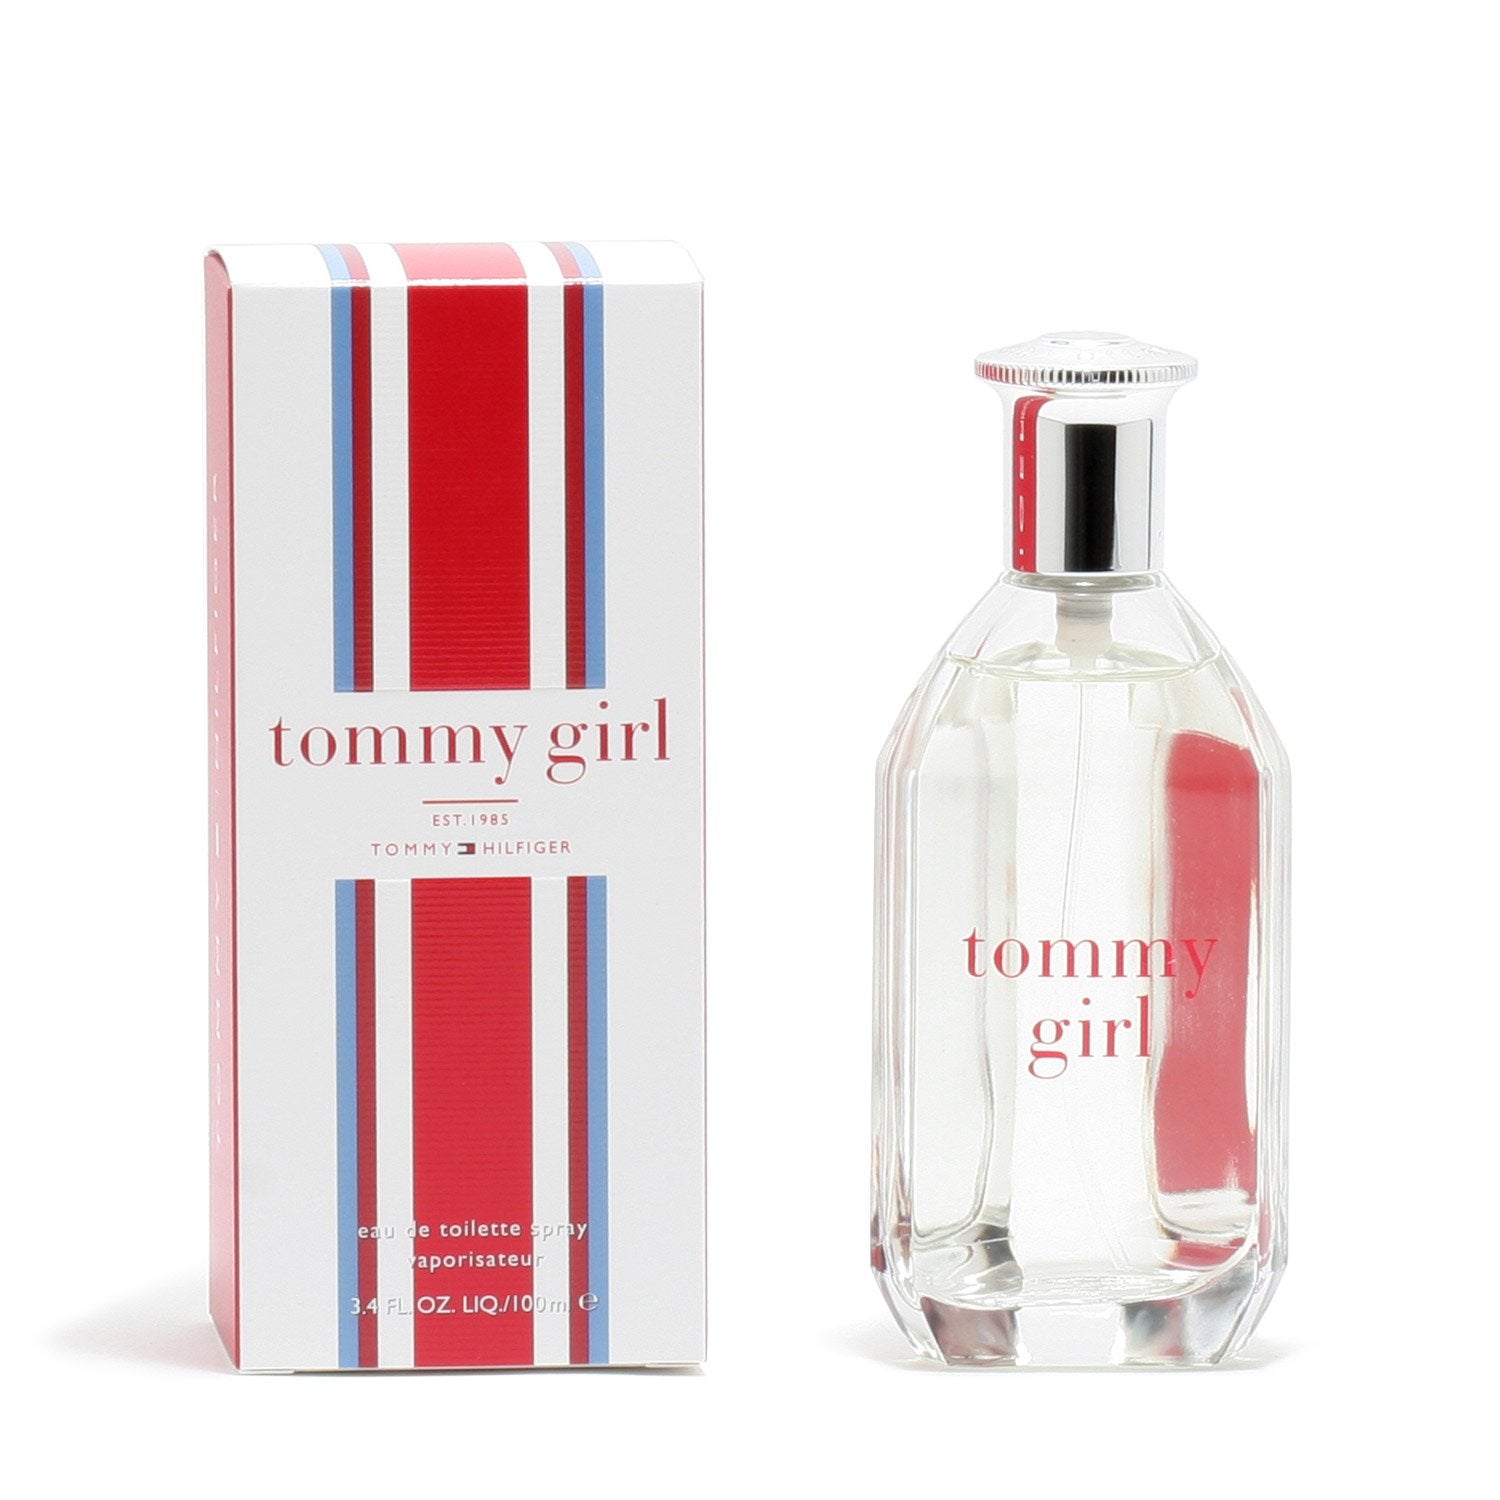 Perfume - TOMMY GIRL FOR WOMEN BY TOMMY HILFIGER - EAU DE TOILETTE  SPRAY